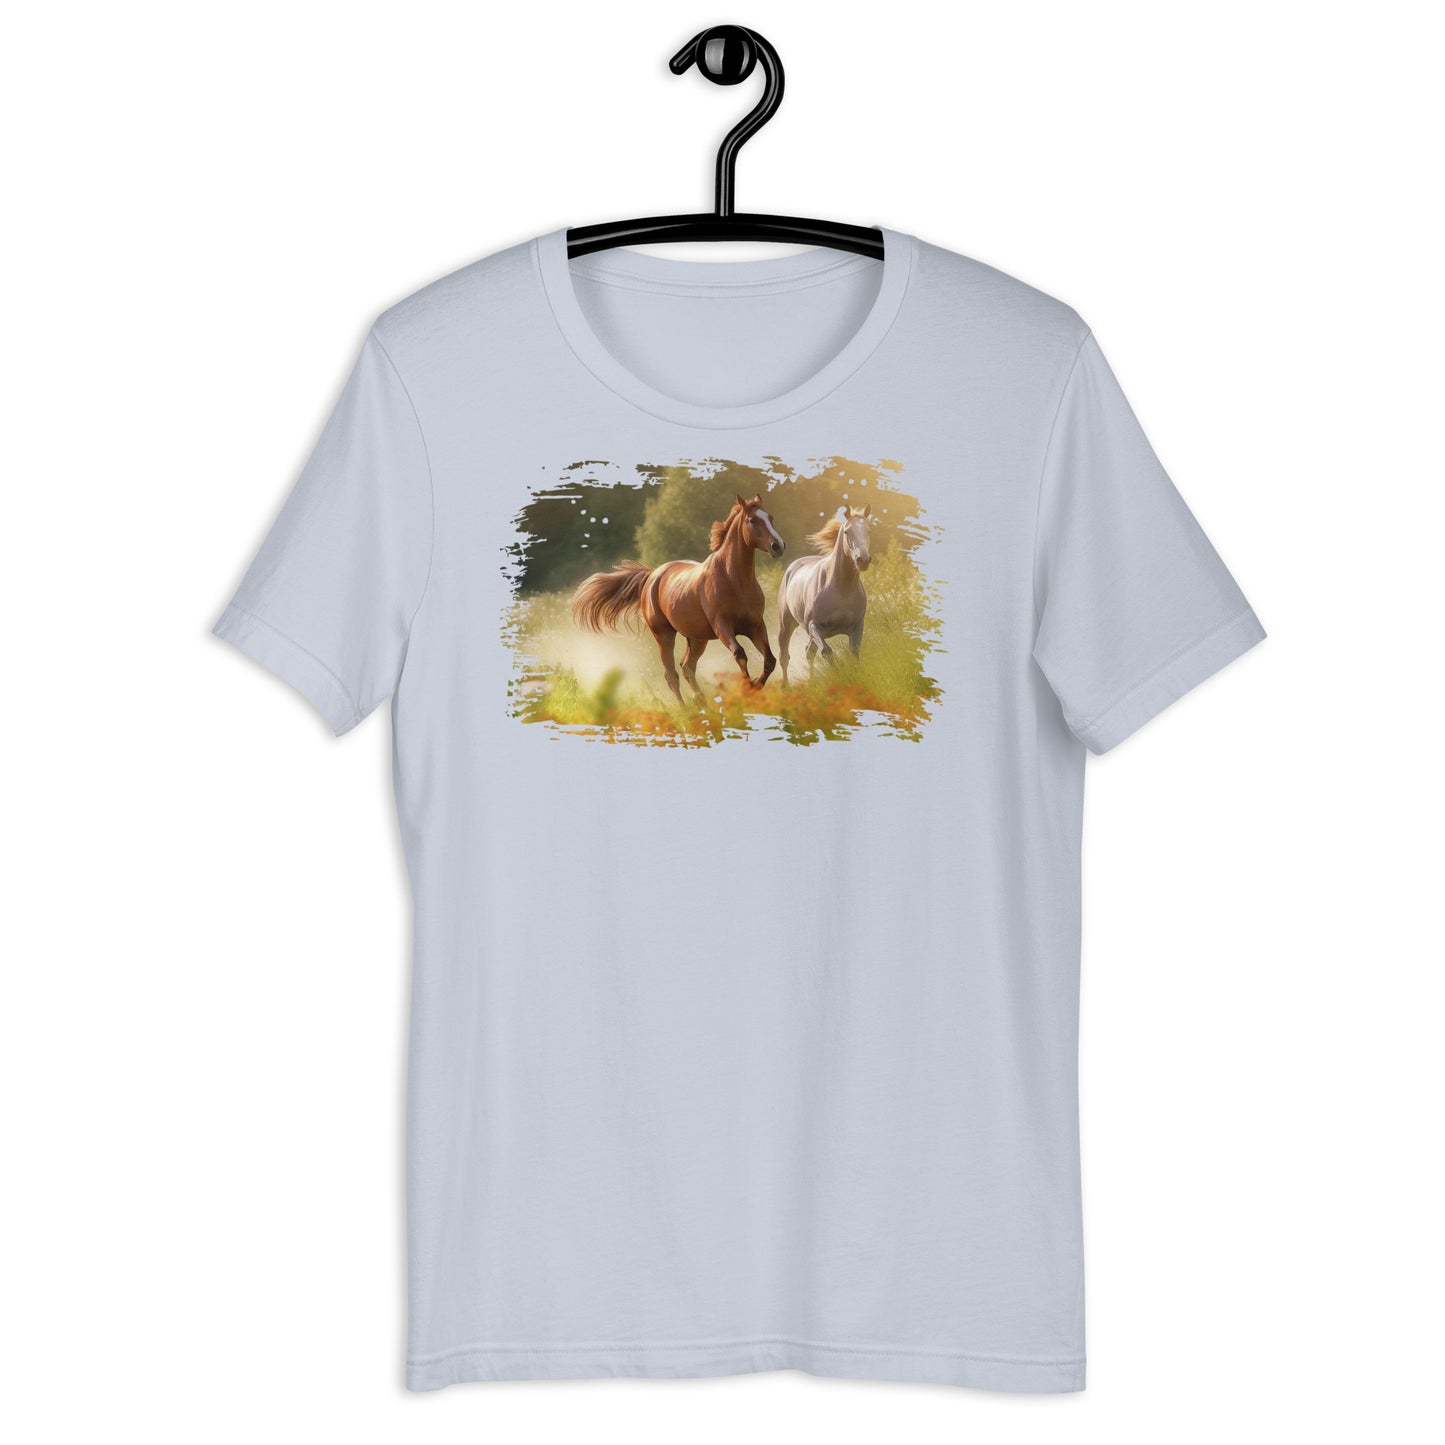 Running Free Horse t-shirt